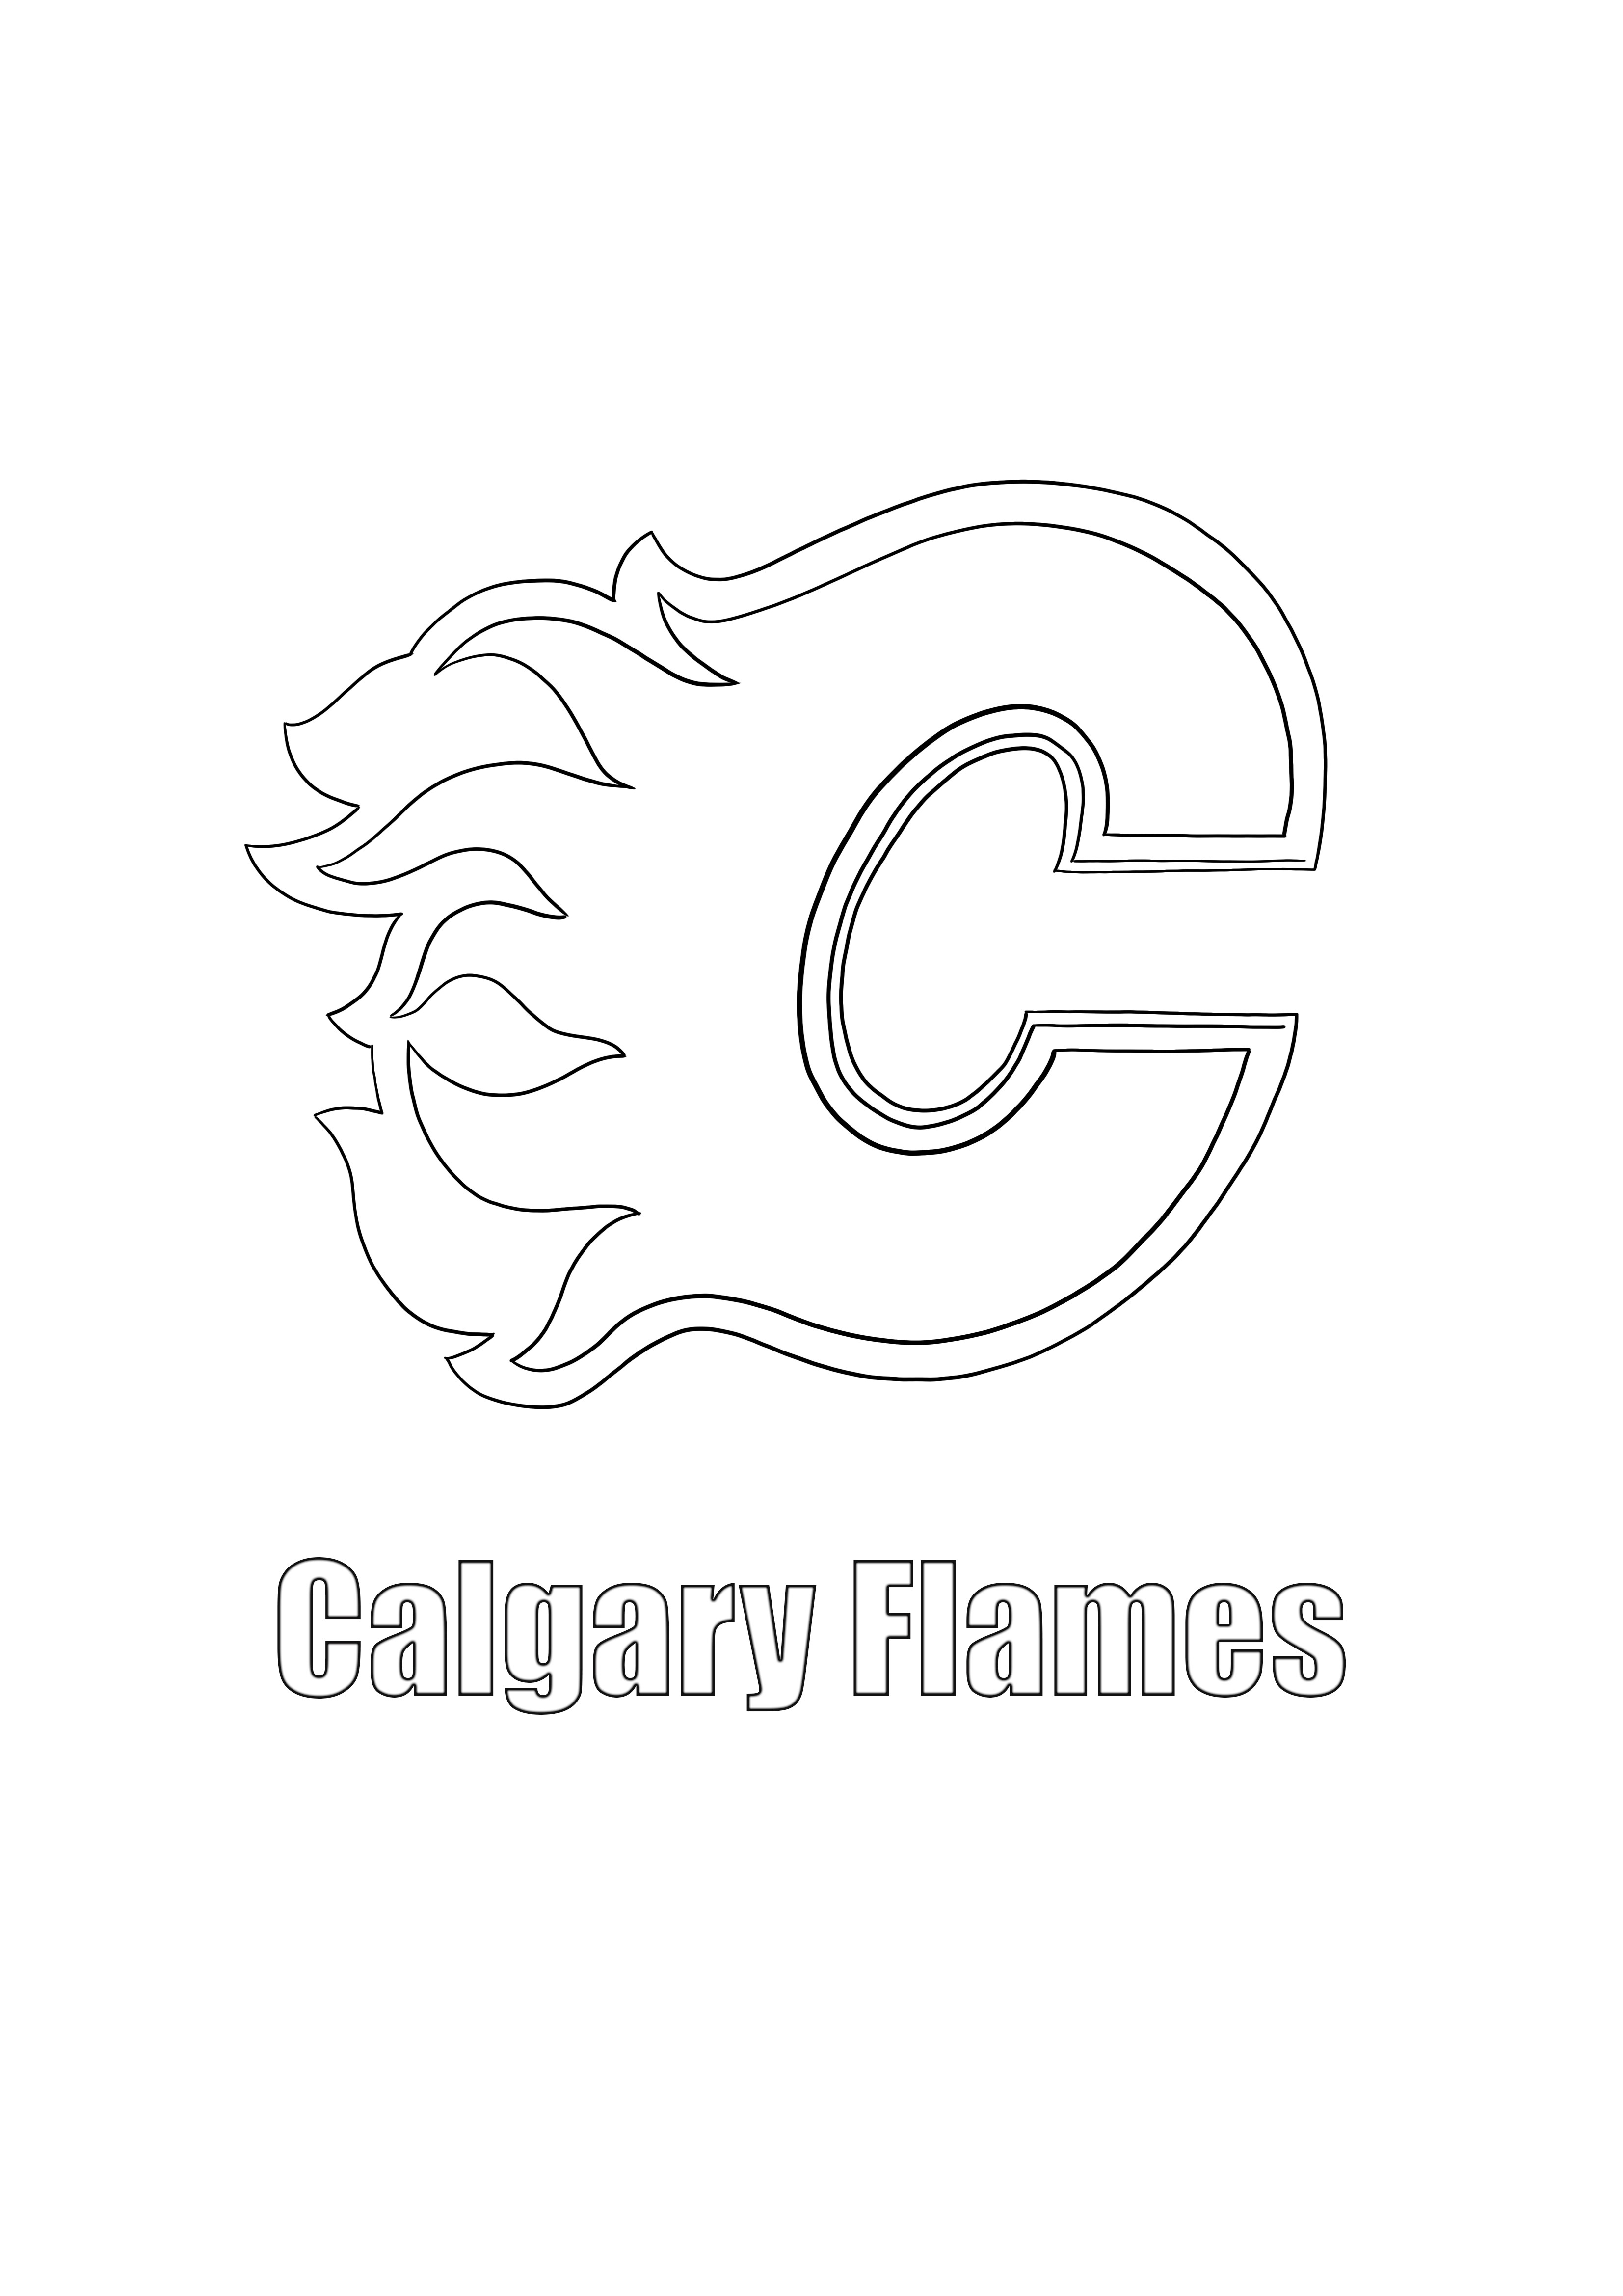 Calgary Flames-logo om gratis af te drukken en te kleuren kleurplaat